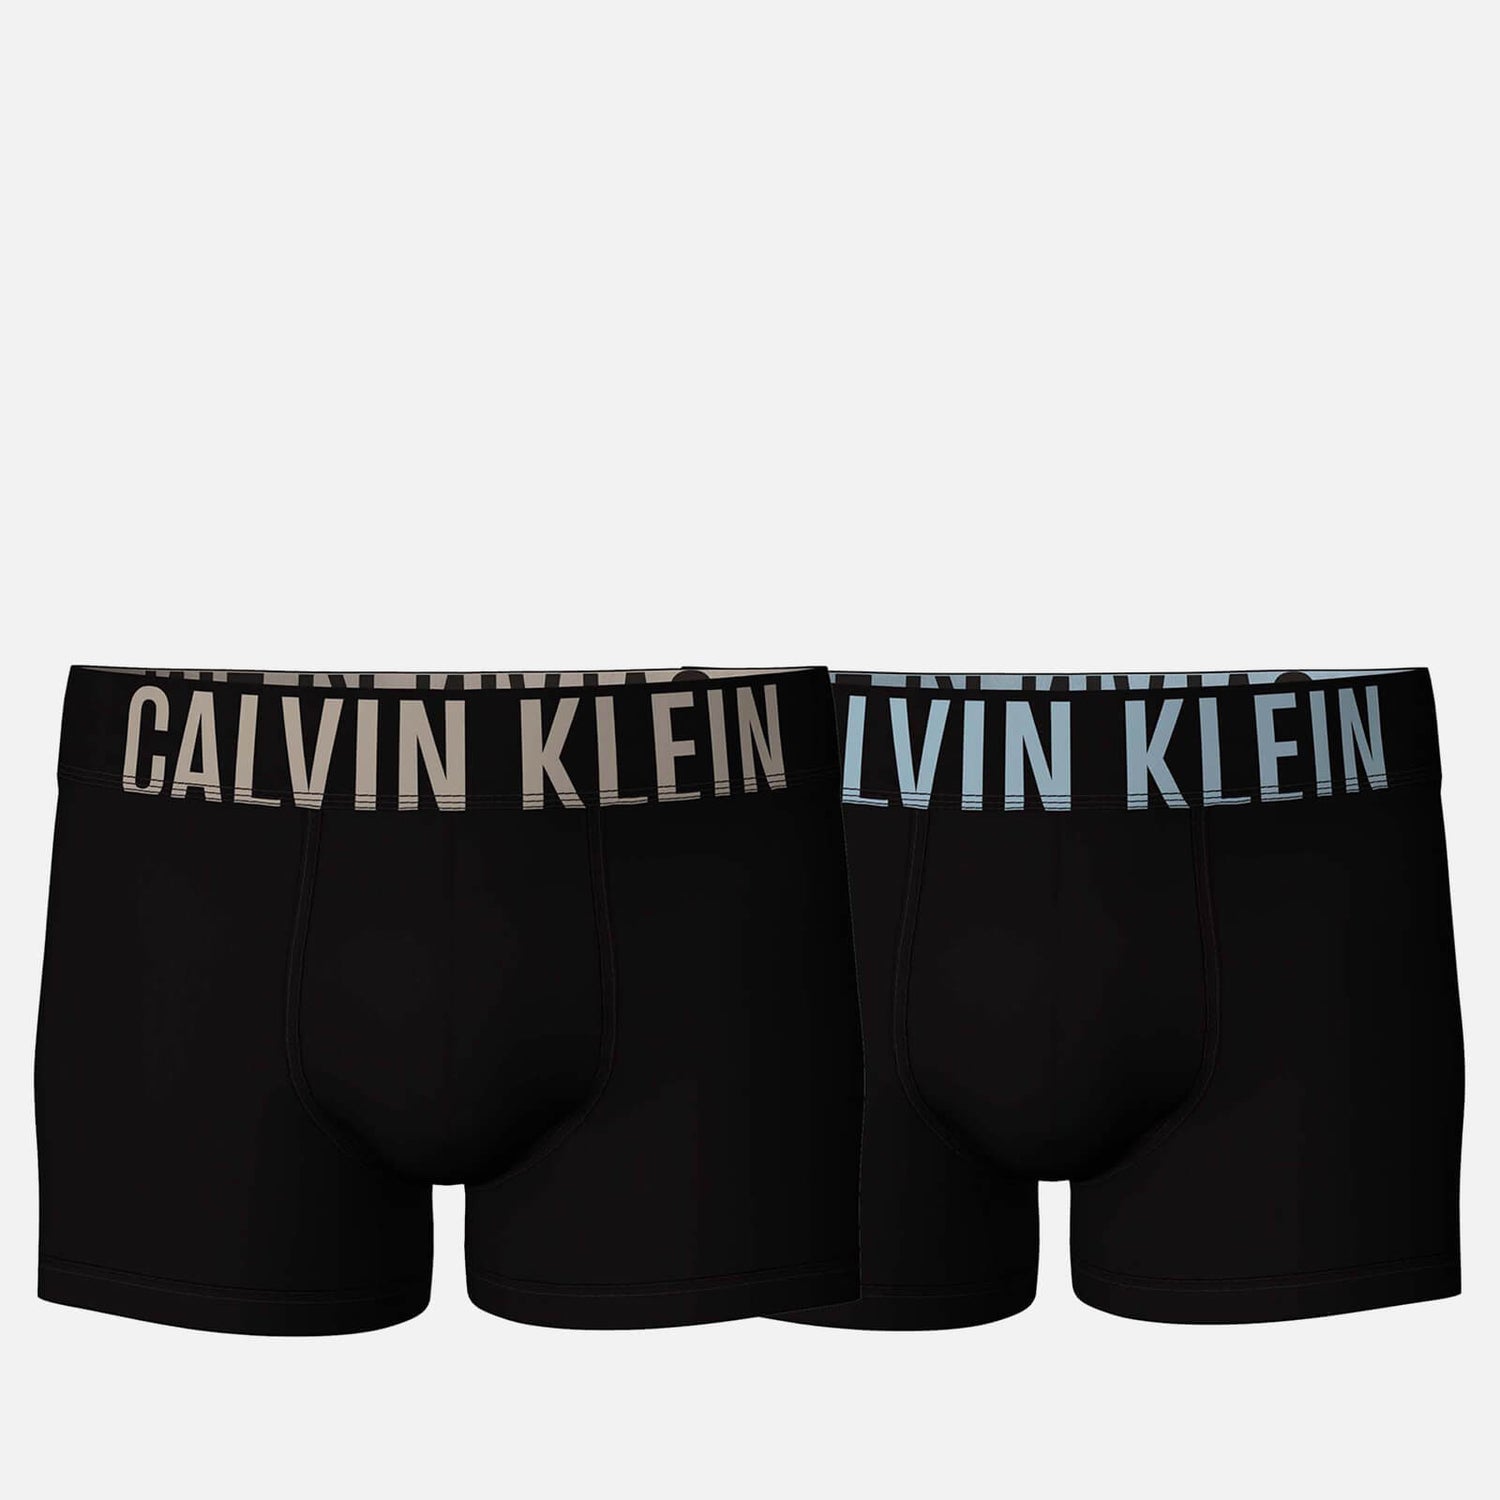 Calvin Klein 2-Pack Trunks